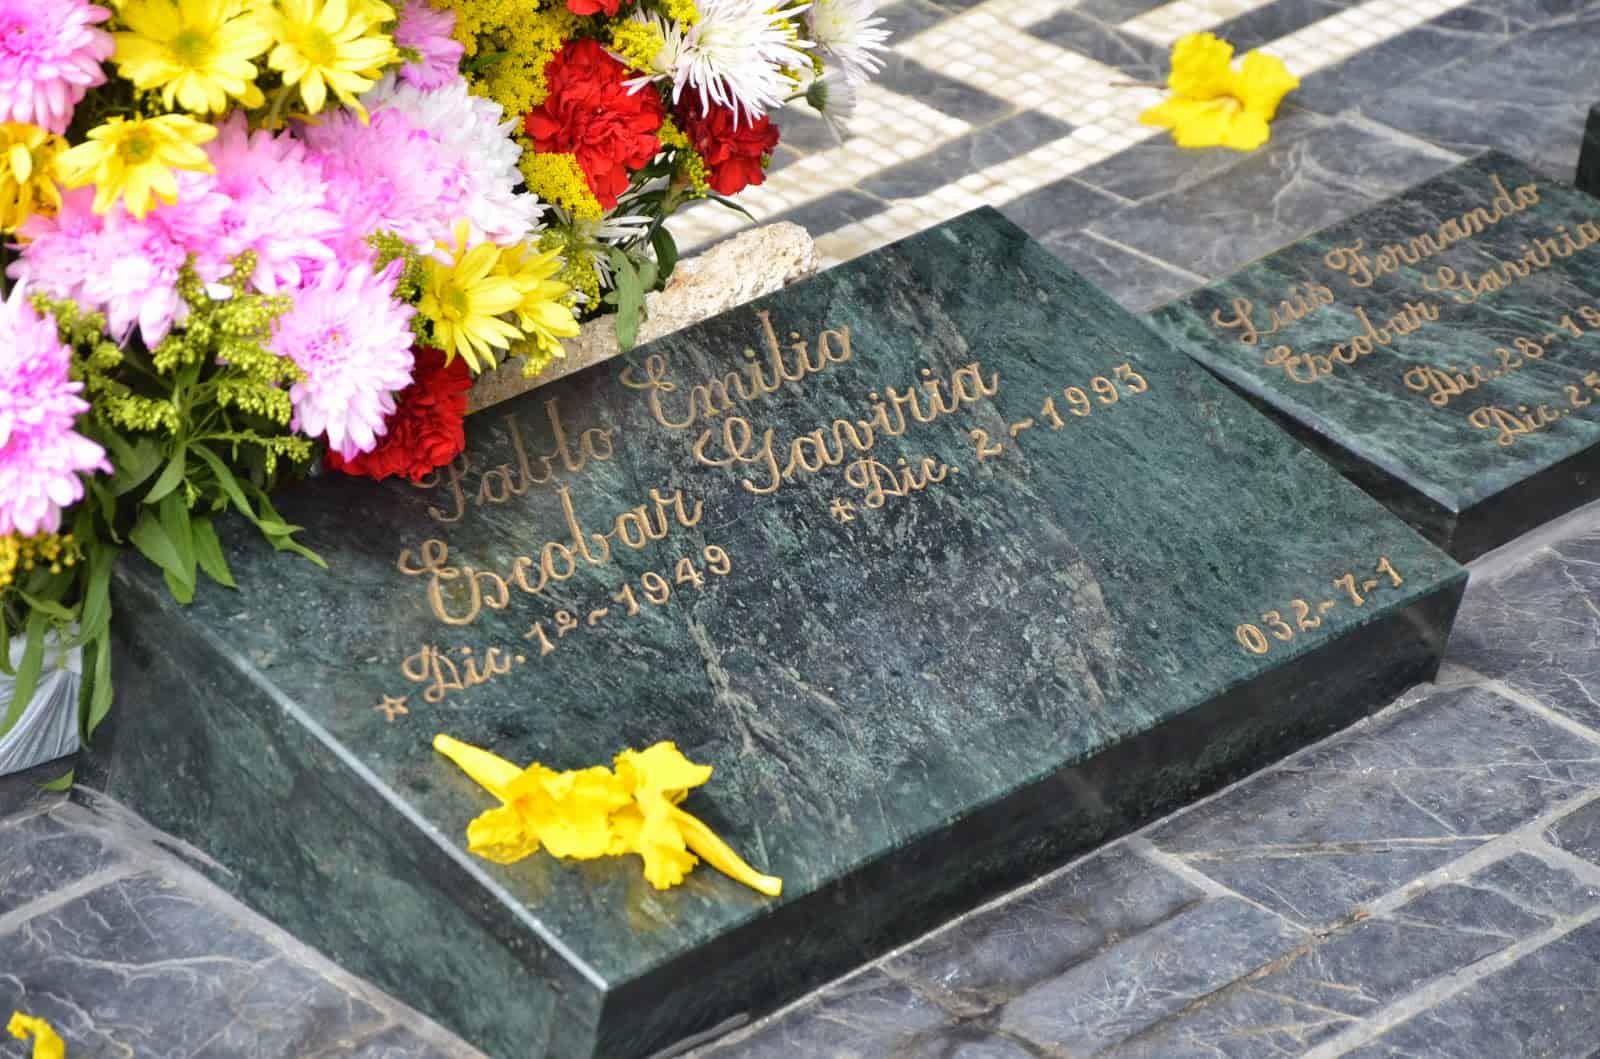 Pablo Escobar’s grave on the Pablo Escobar tour at Montesacro Gardens Cemetery in Itagüí, Antioquia, Colombia